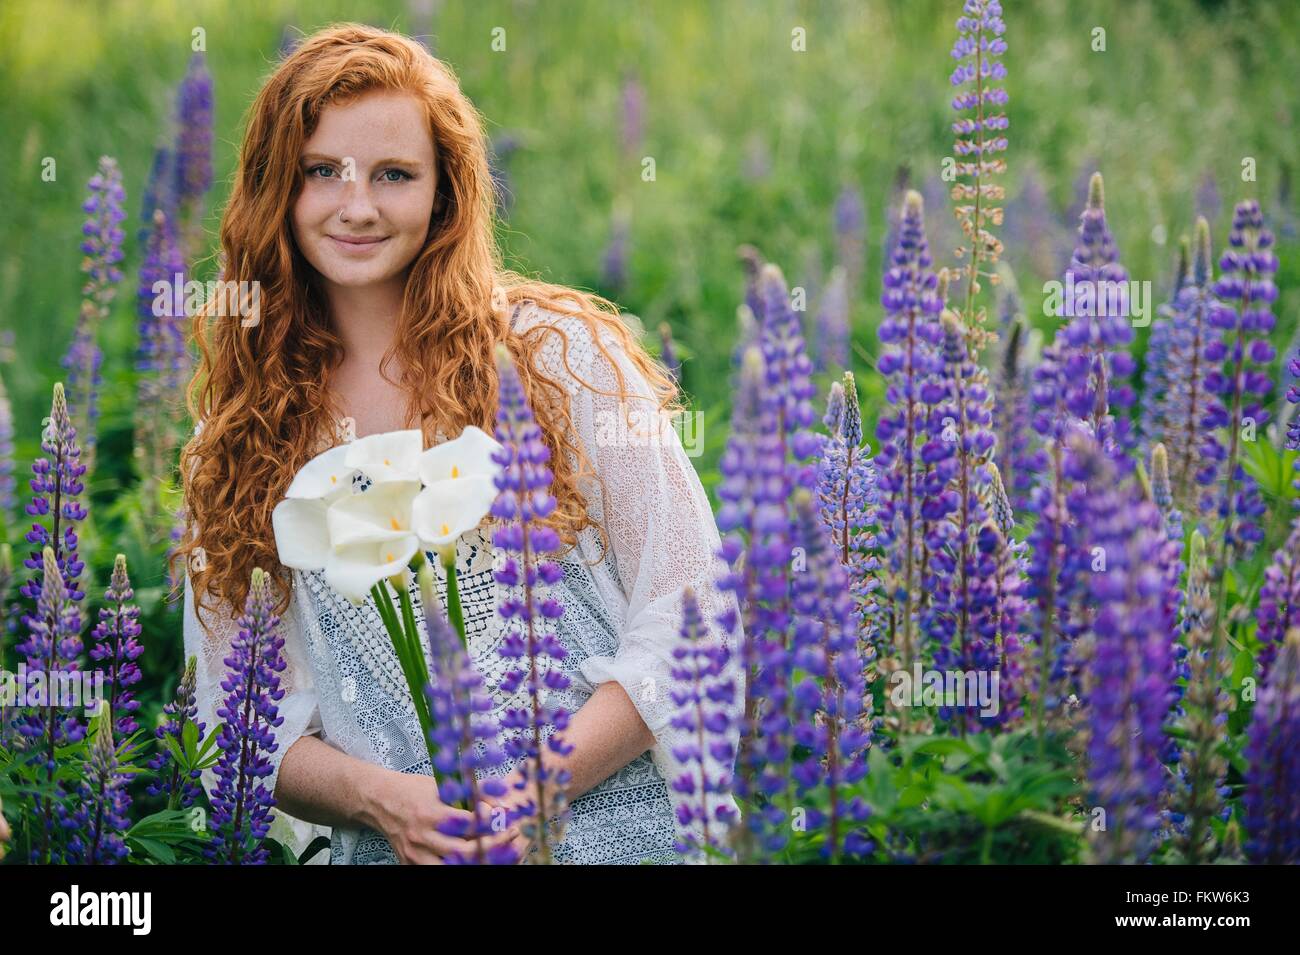 Ritratto di giovane donna tra i fiori selvatici viola holding mazzetto di gigli Foto Stock